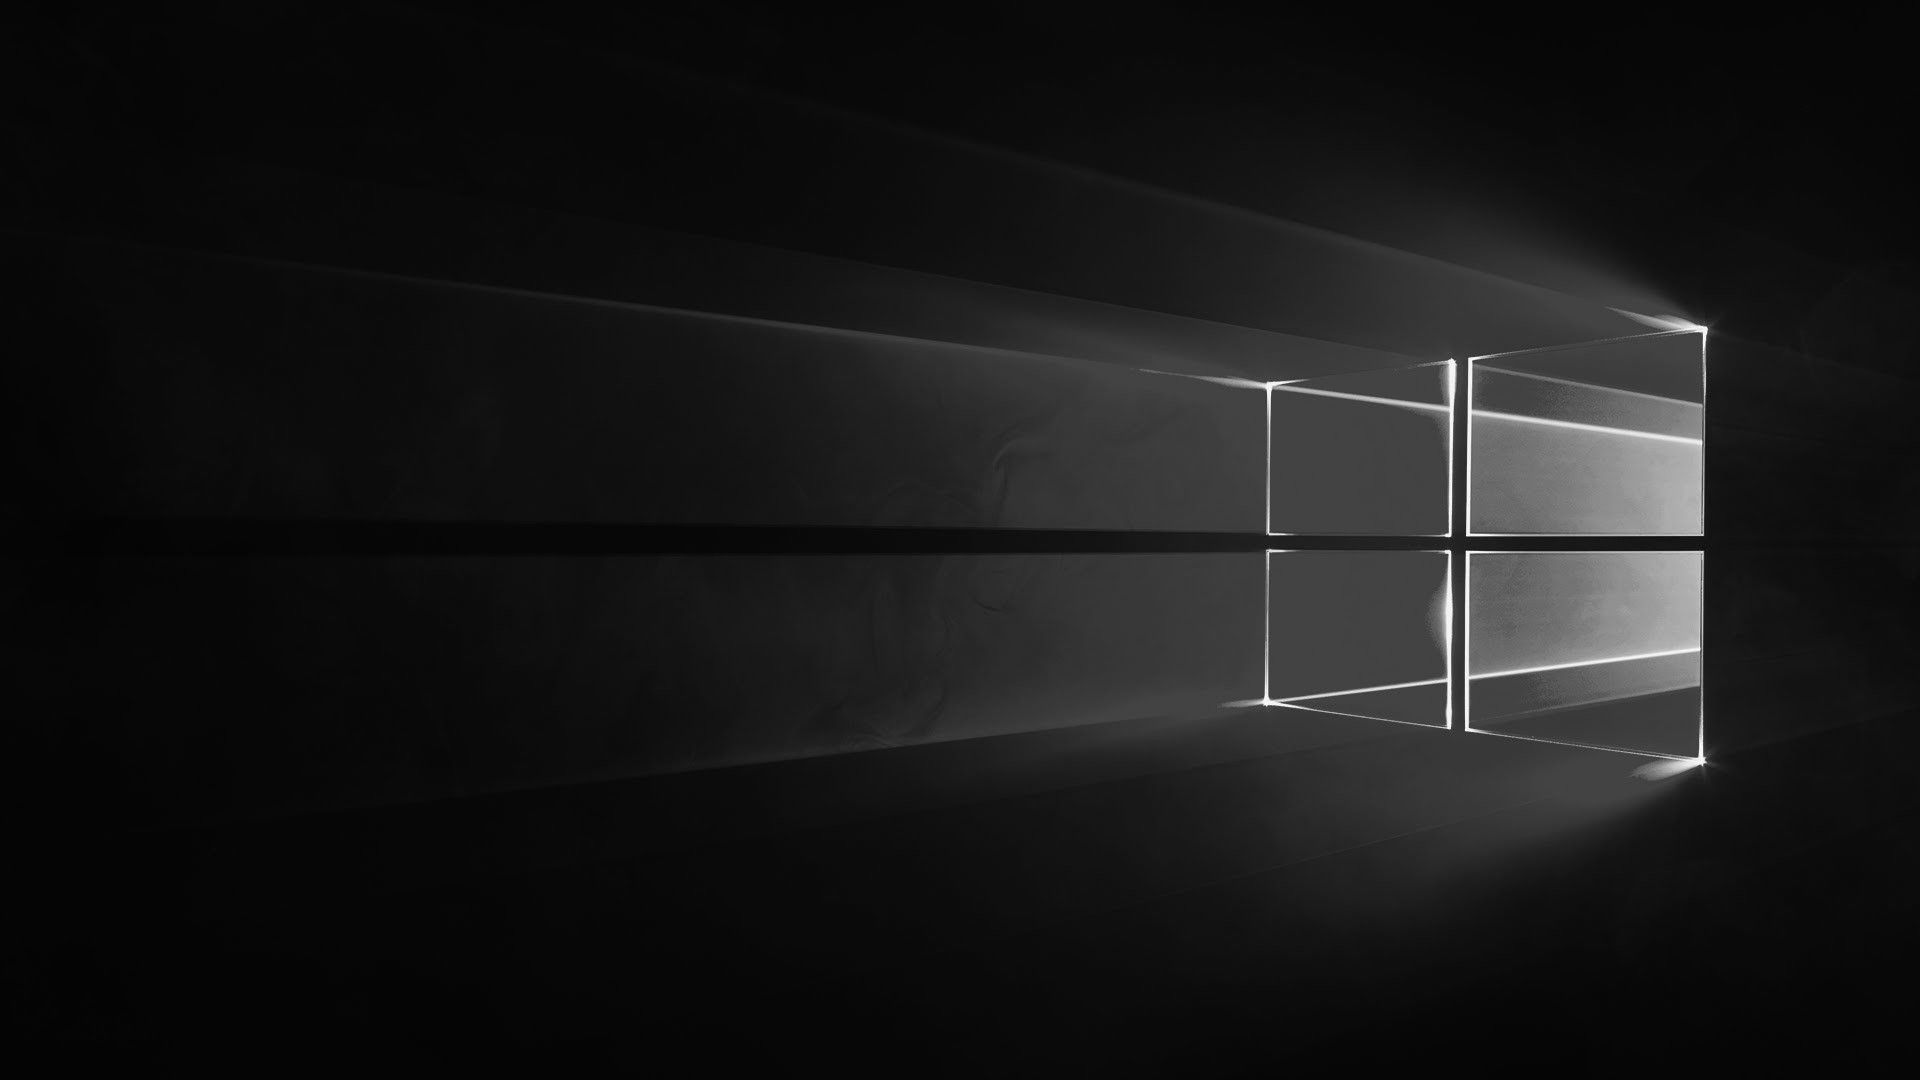 Hình nền đen Windows 10 là nguồn cảm hứng lý tưởng để thể hiện sự tinh tế và đẳng cấp của bạn. Tuy màu đen mang ý nghĩa tiêu cực, nhưng với hình ảnh độc đáo, bạn có thể khai thác và phát huy được sức mạnh của màu sắc này.